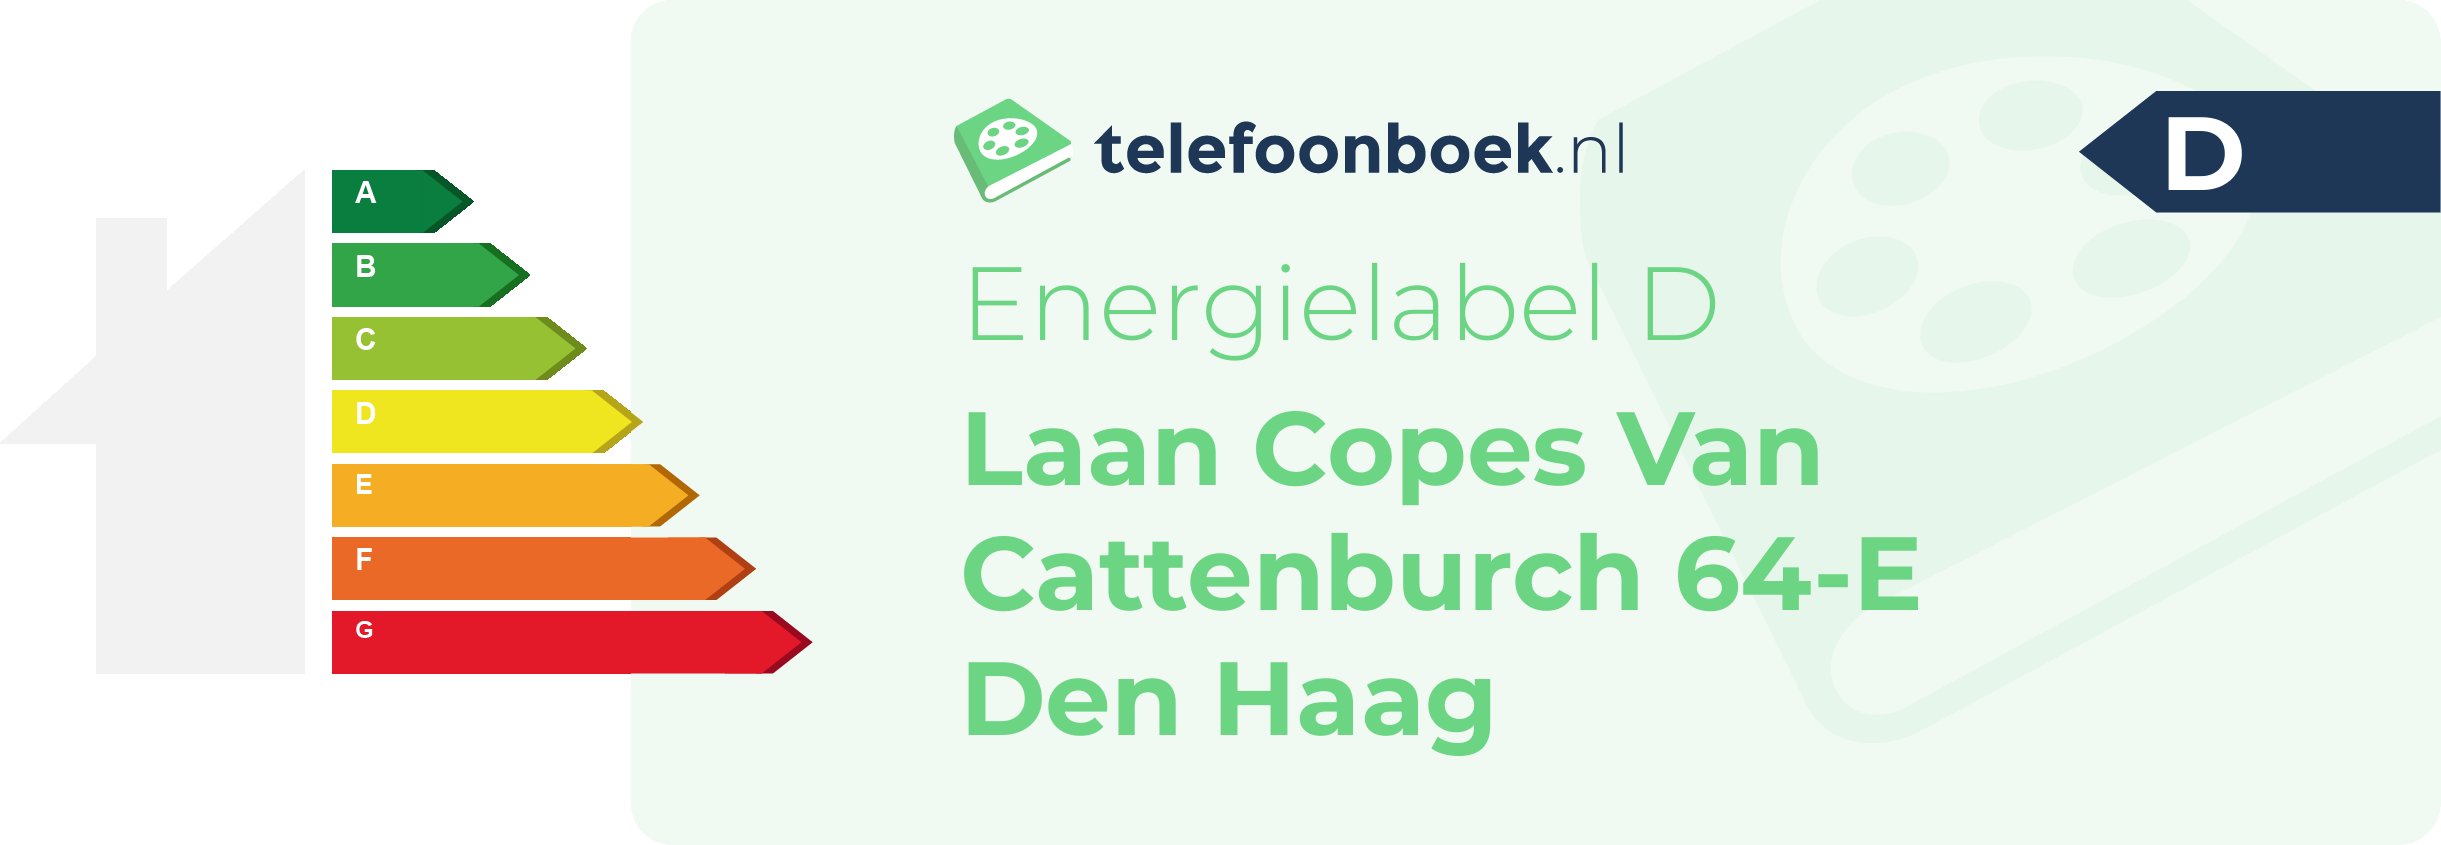 Energielabel Laan Copes Van Cattenburch 64-E Den Haag